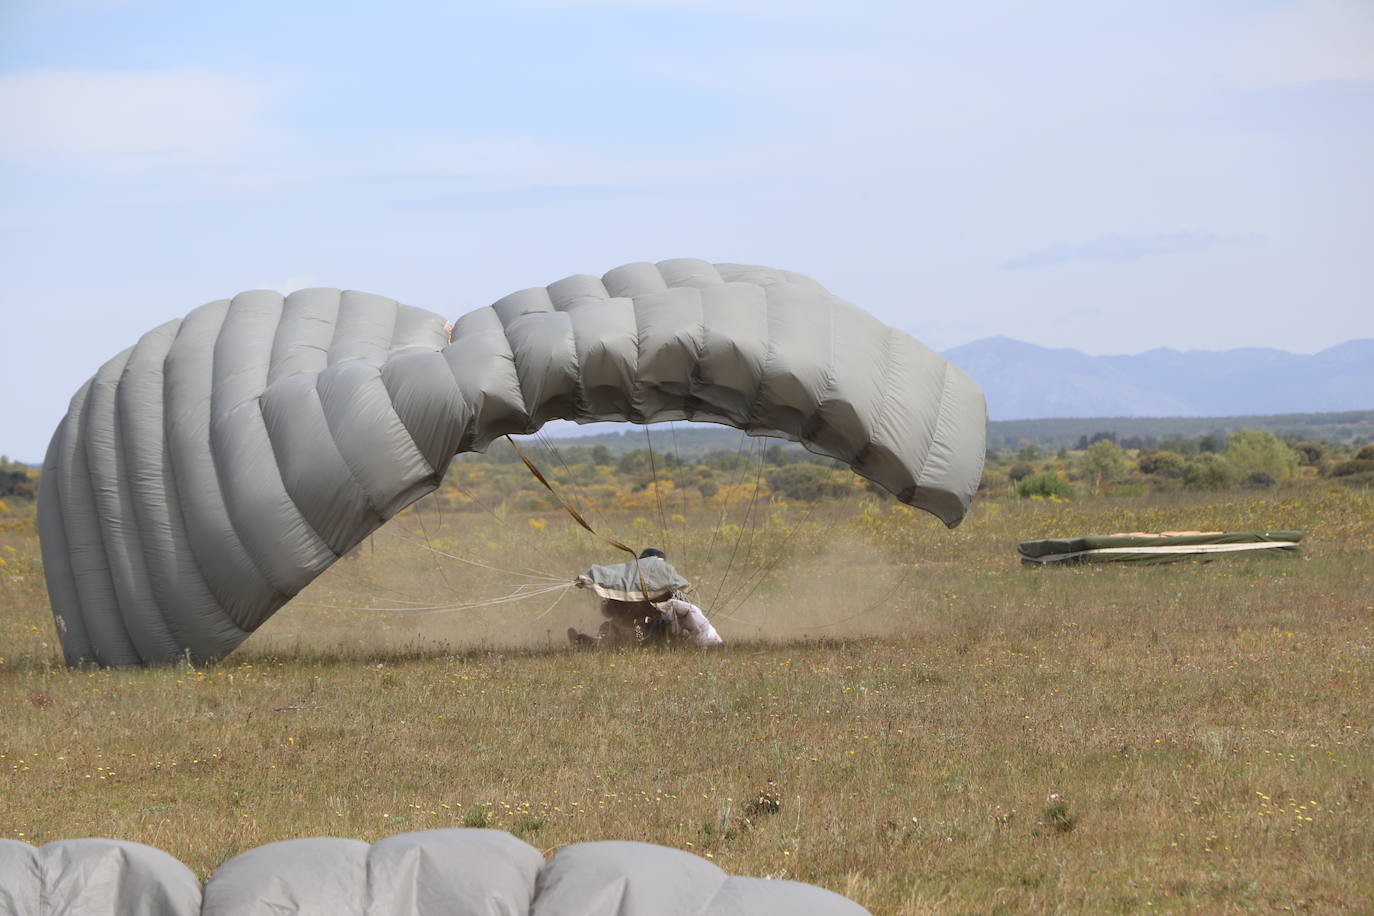 La Brigada Paracaidista pone en práctica el ejercicio Lone Paratrooper 2021 en el que 140 paracaidistas de España, Francia, Portugal y Estados Unidos se instruyen en el cielo inmejorable de la Academia Básica del Aire de la Virgen del Camino